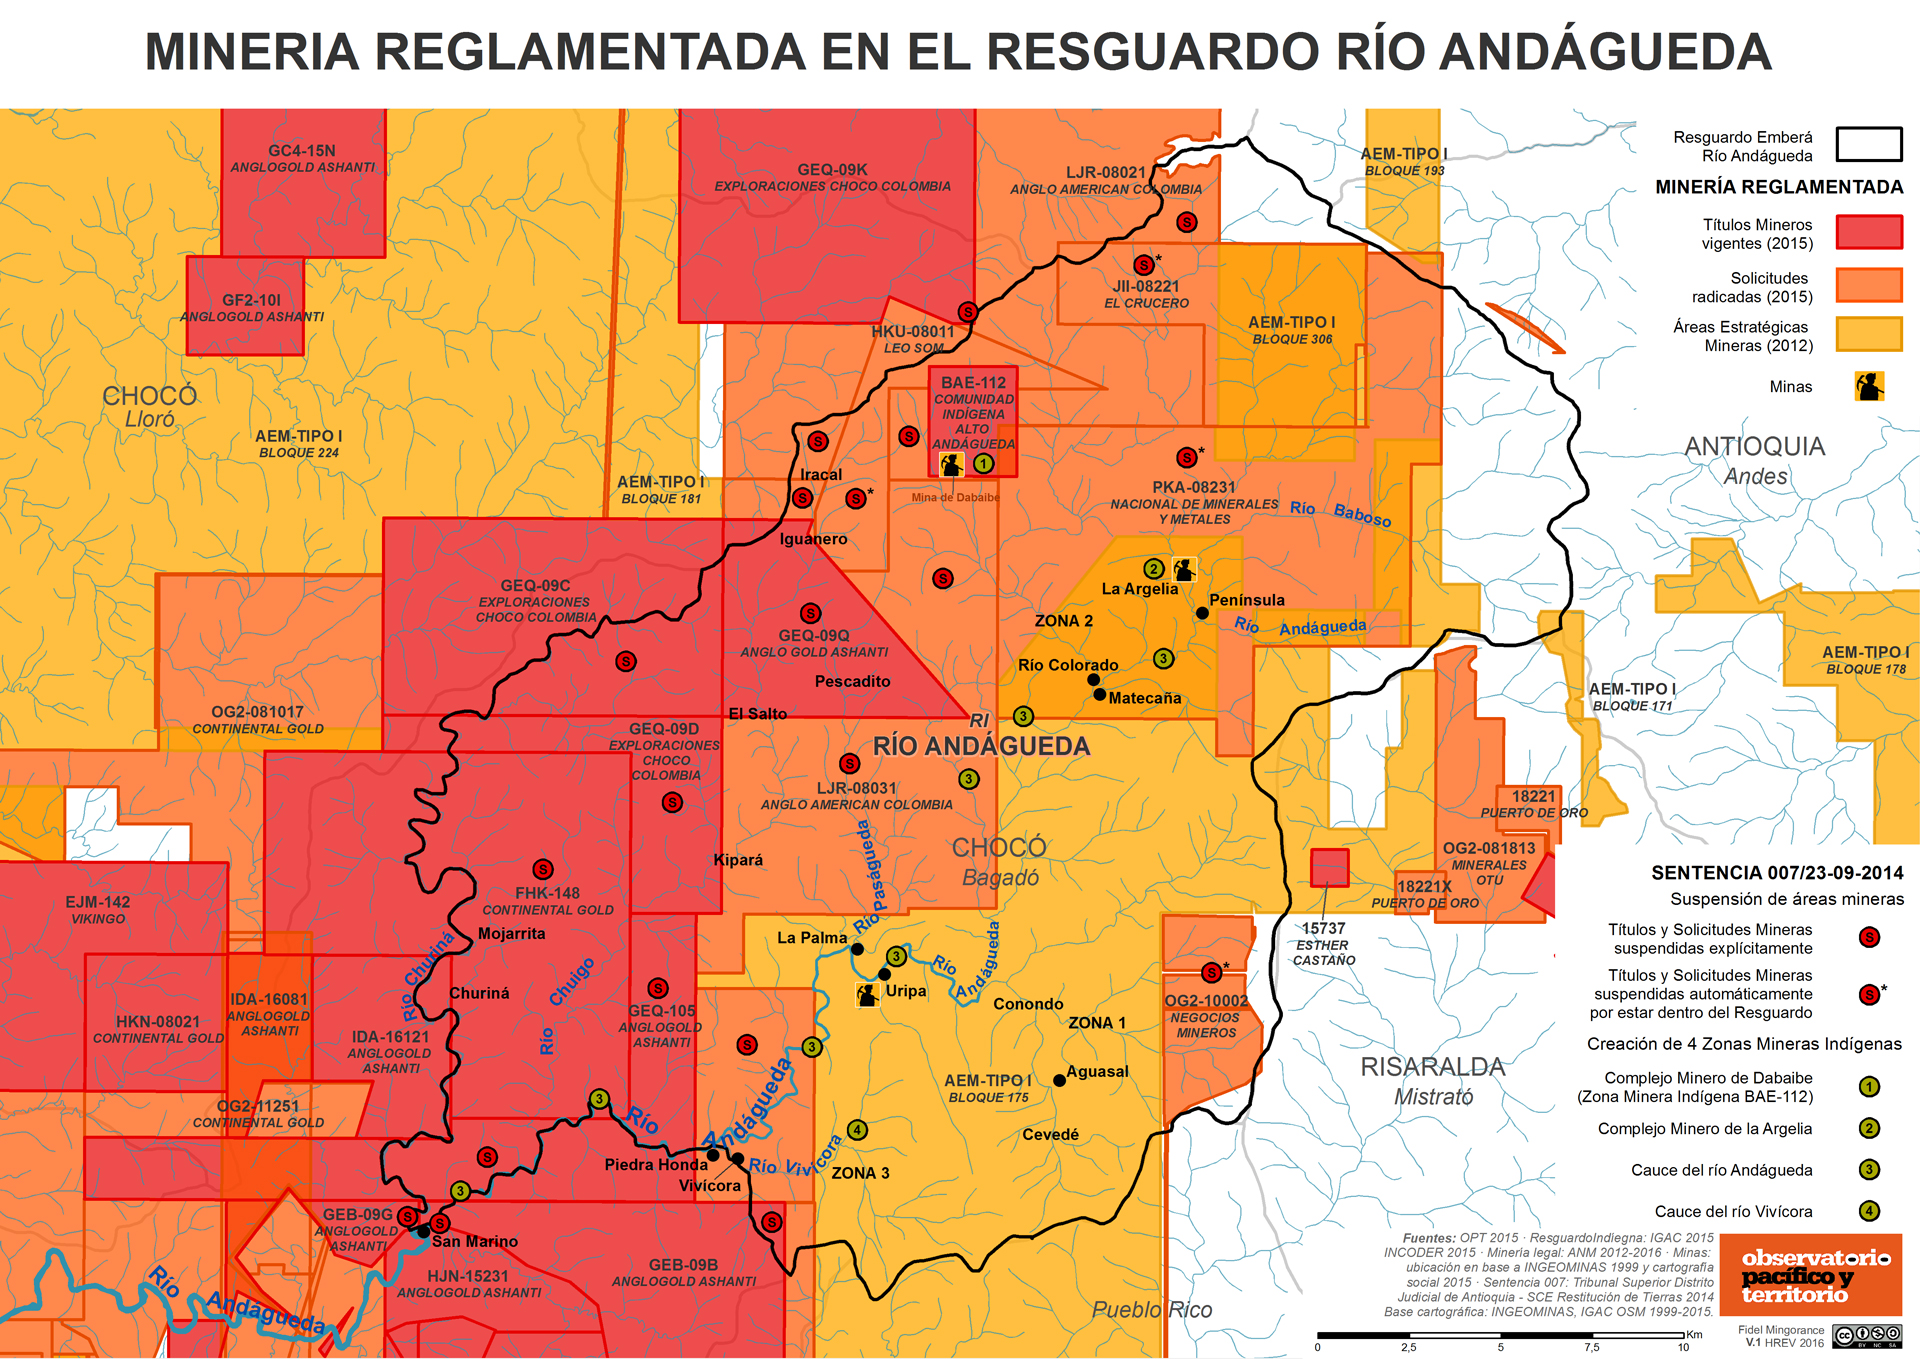 Minería en el Resguardo Río Andágueda (2015)